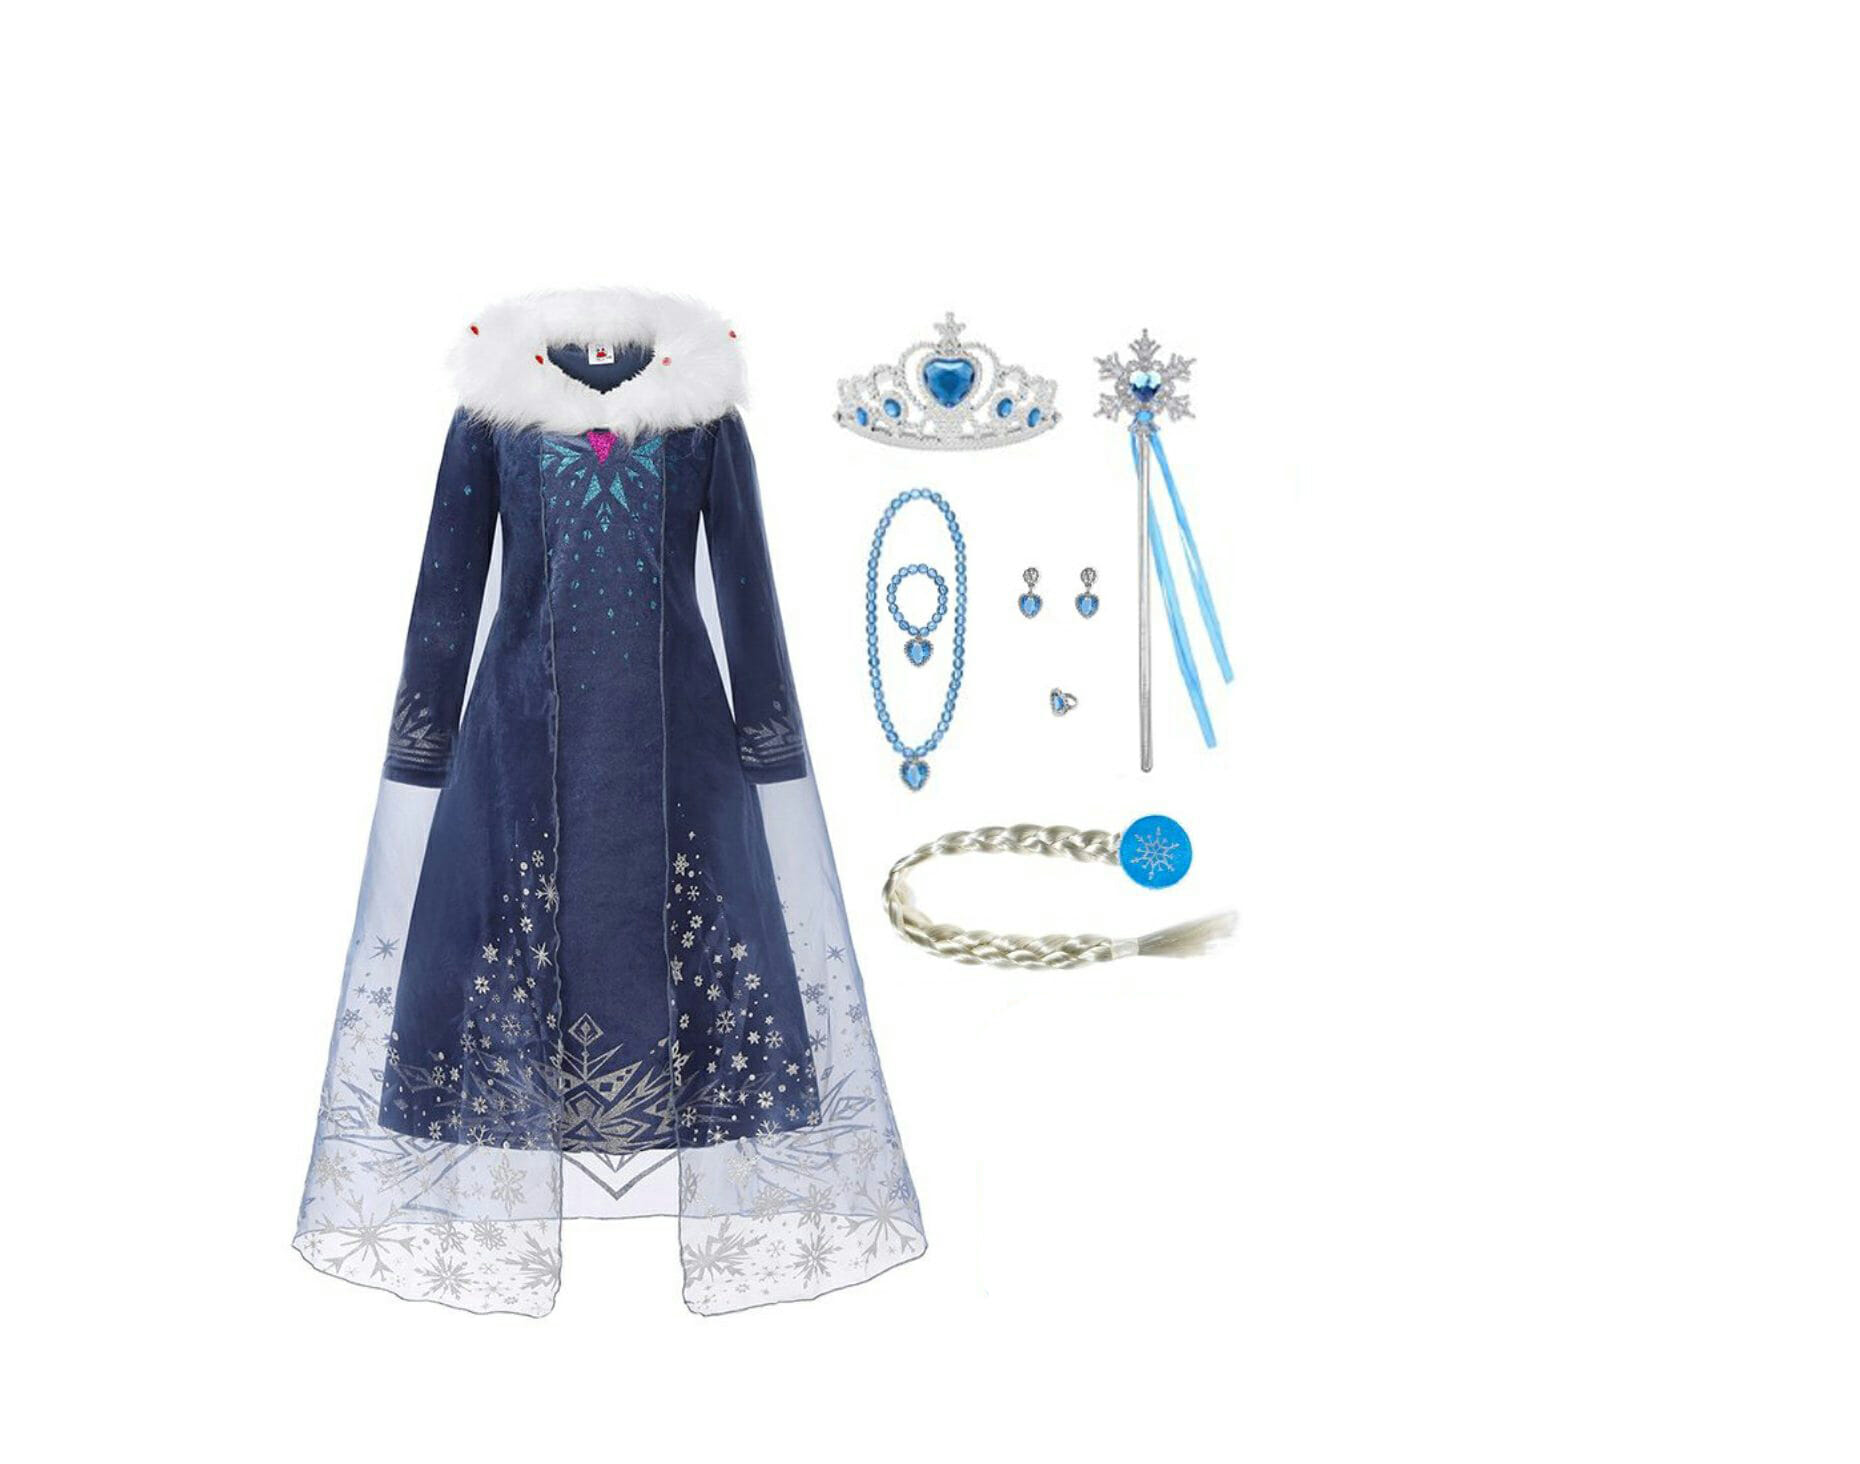 Stemmen Ontmoedigd zijn Gezag Frozen - Prinsessenjurk Meisje - Elsa blauwe jurk - Verkleedjurk -  Verkleedkleding kind